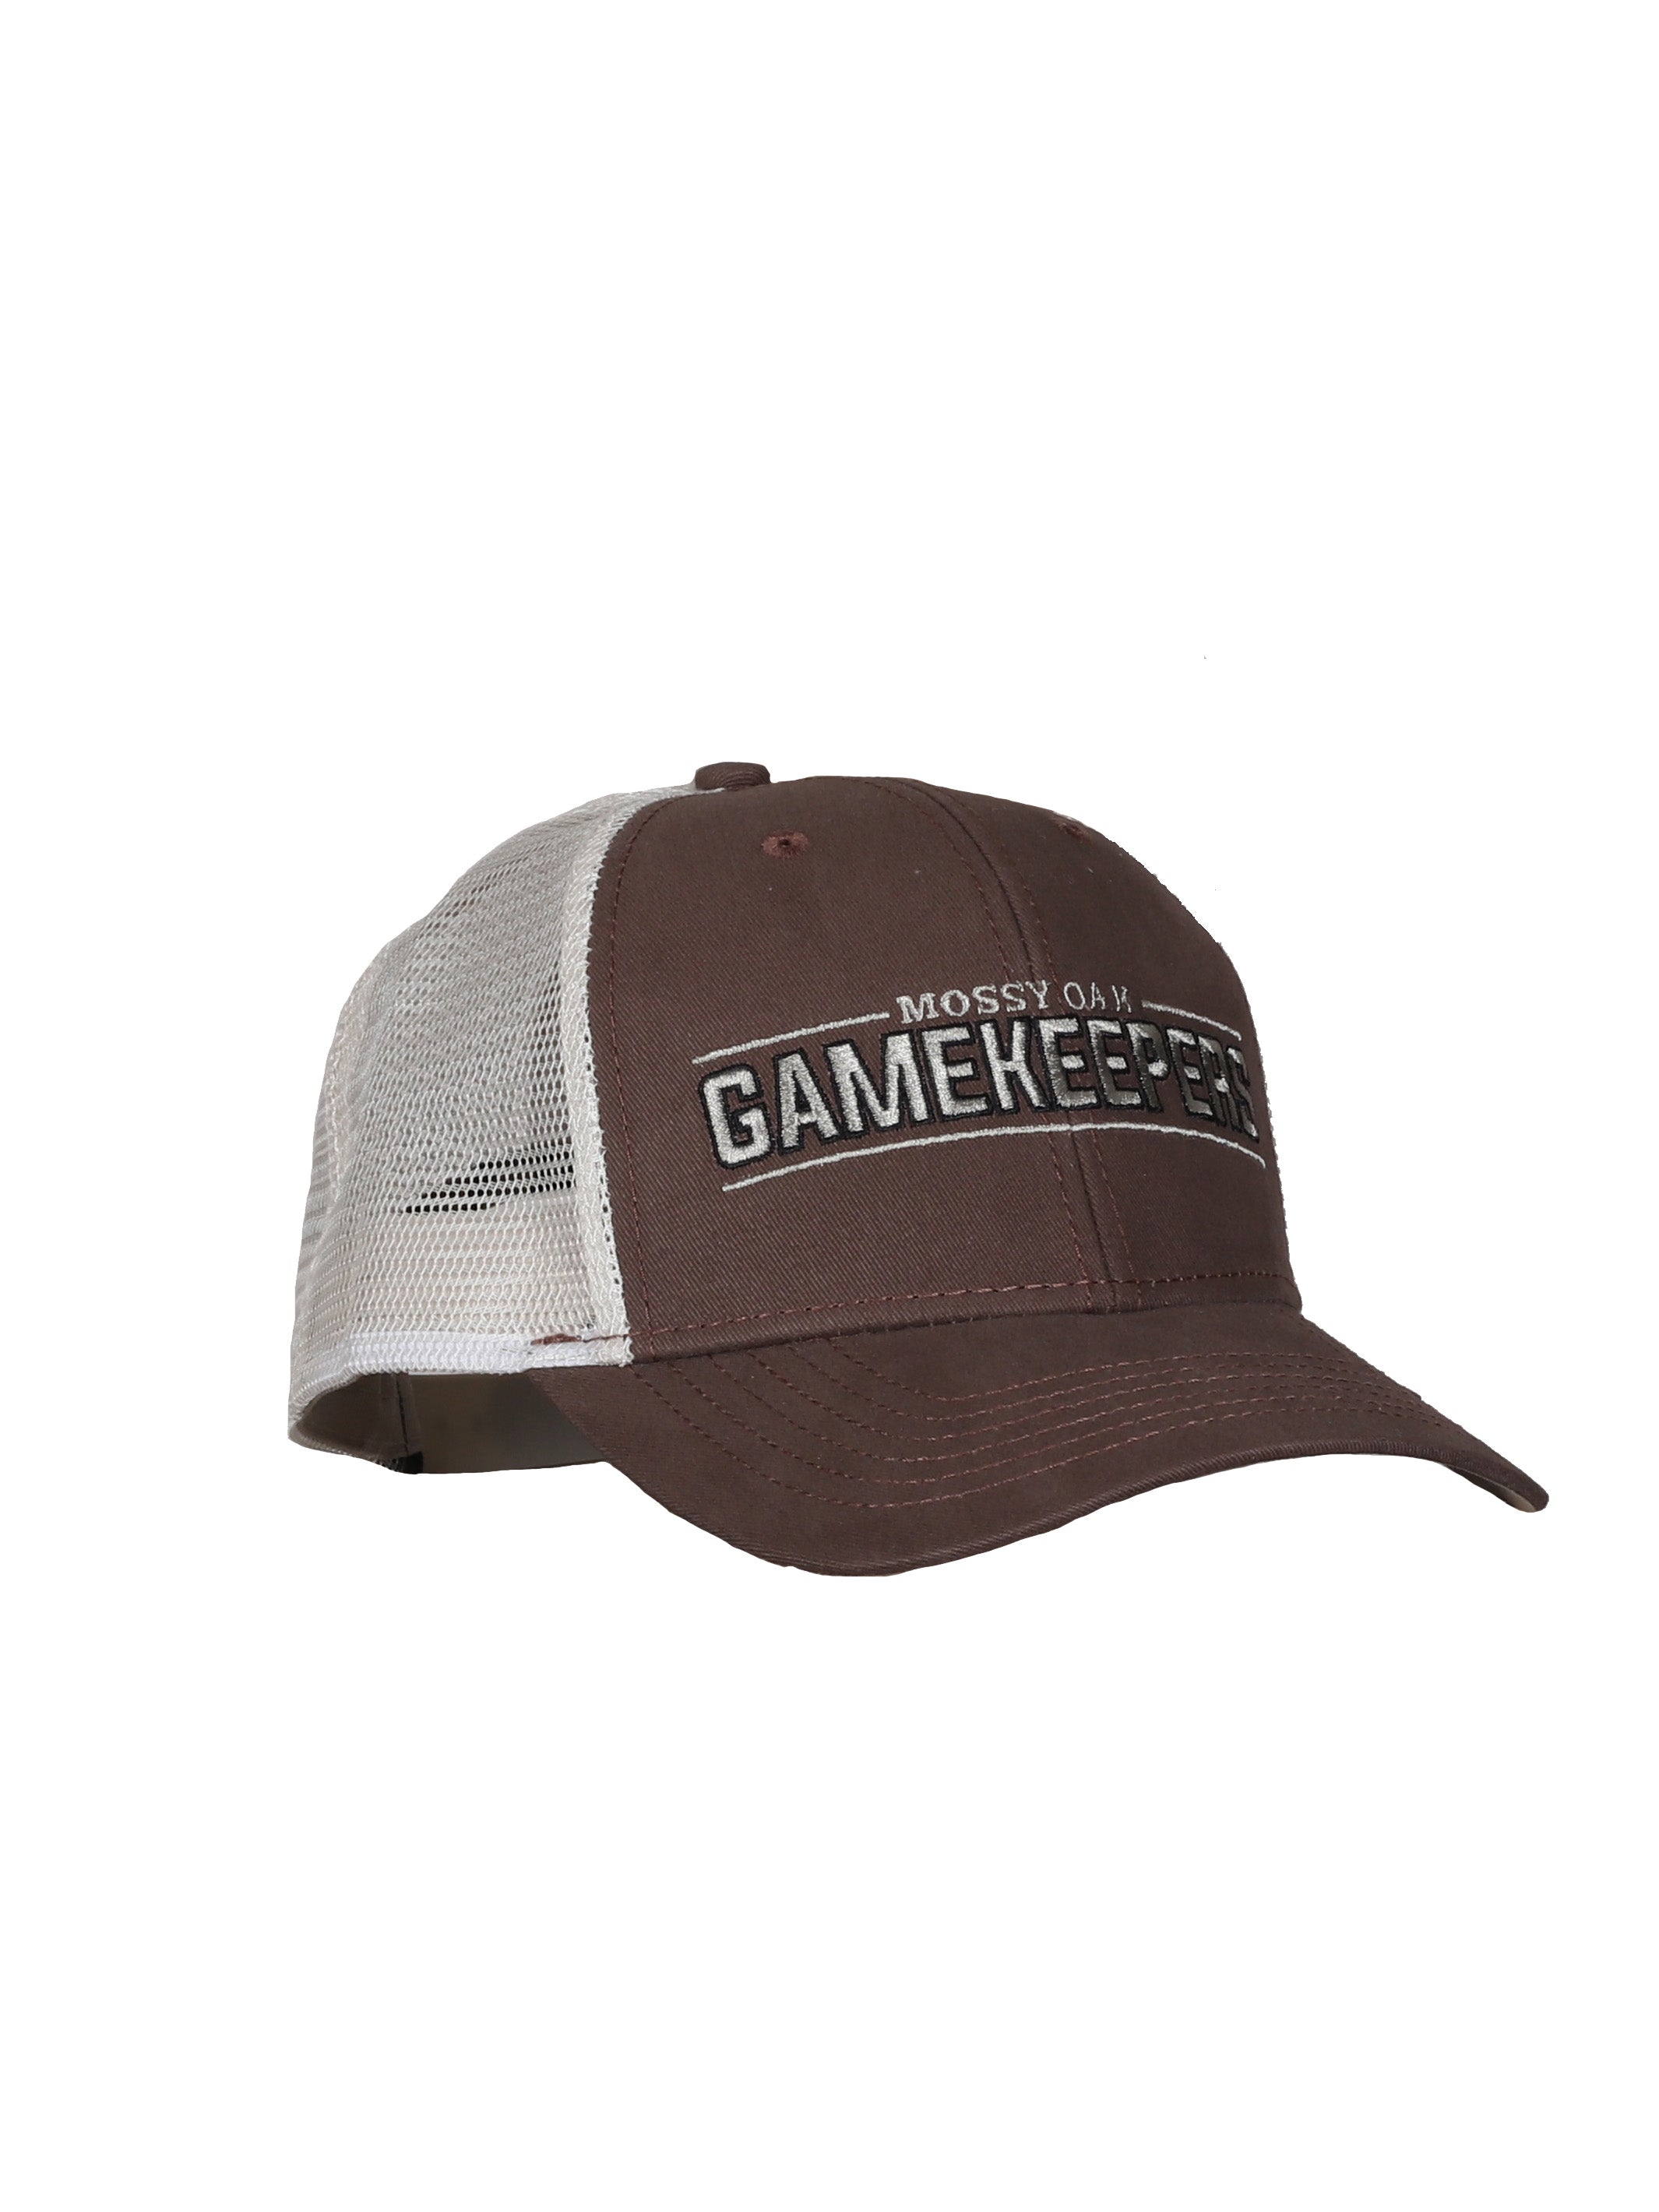 Mossy Oak Gamekeeper Casual Hat - 113811MUD 